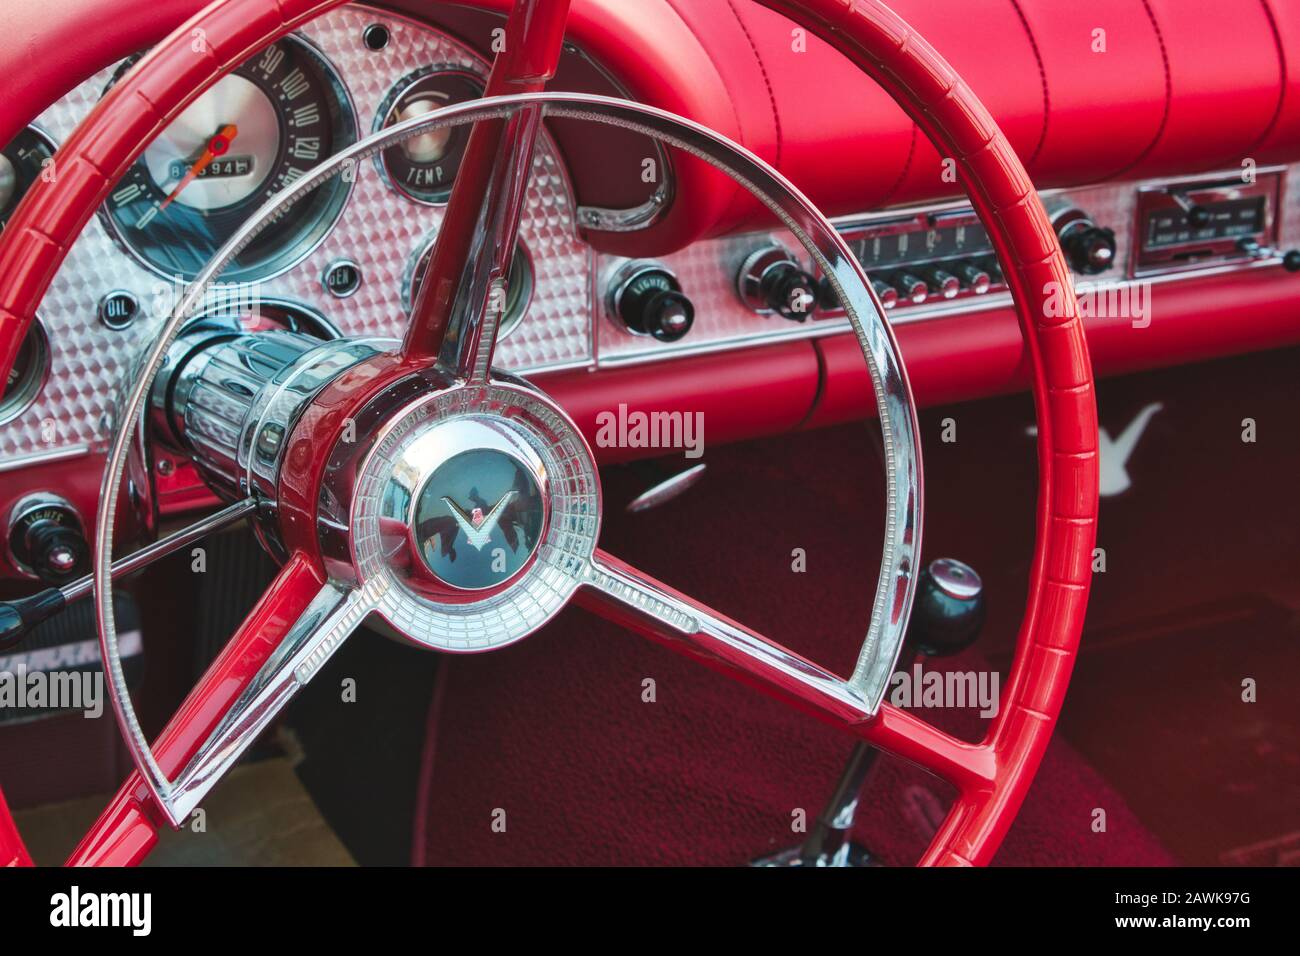 Rabat / Malta - 24 luglio 2019: Primo piano del volante rosso all'interno dell'abitacolo di una classica vettura sportiva Ford Thunderbird Foto Stock